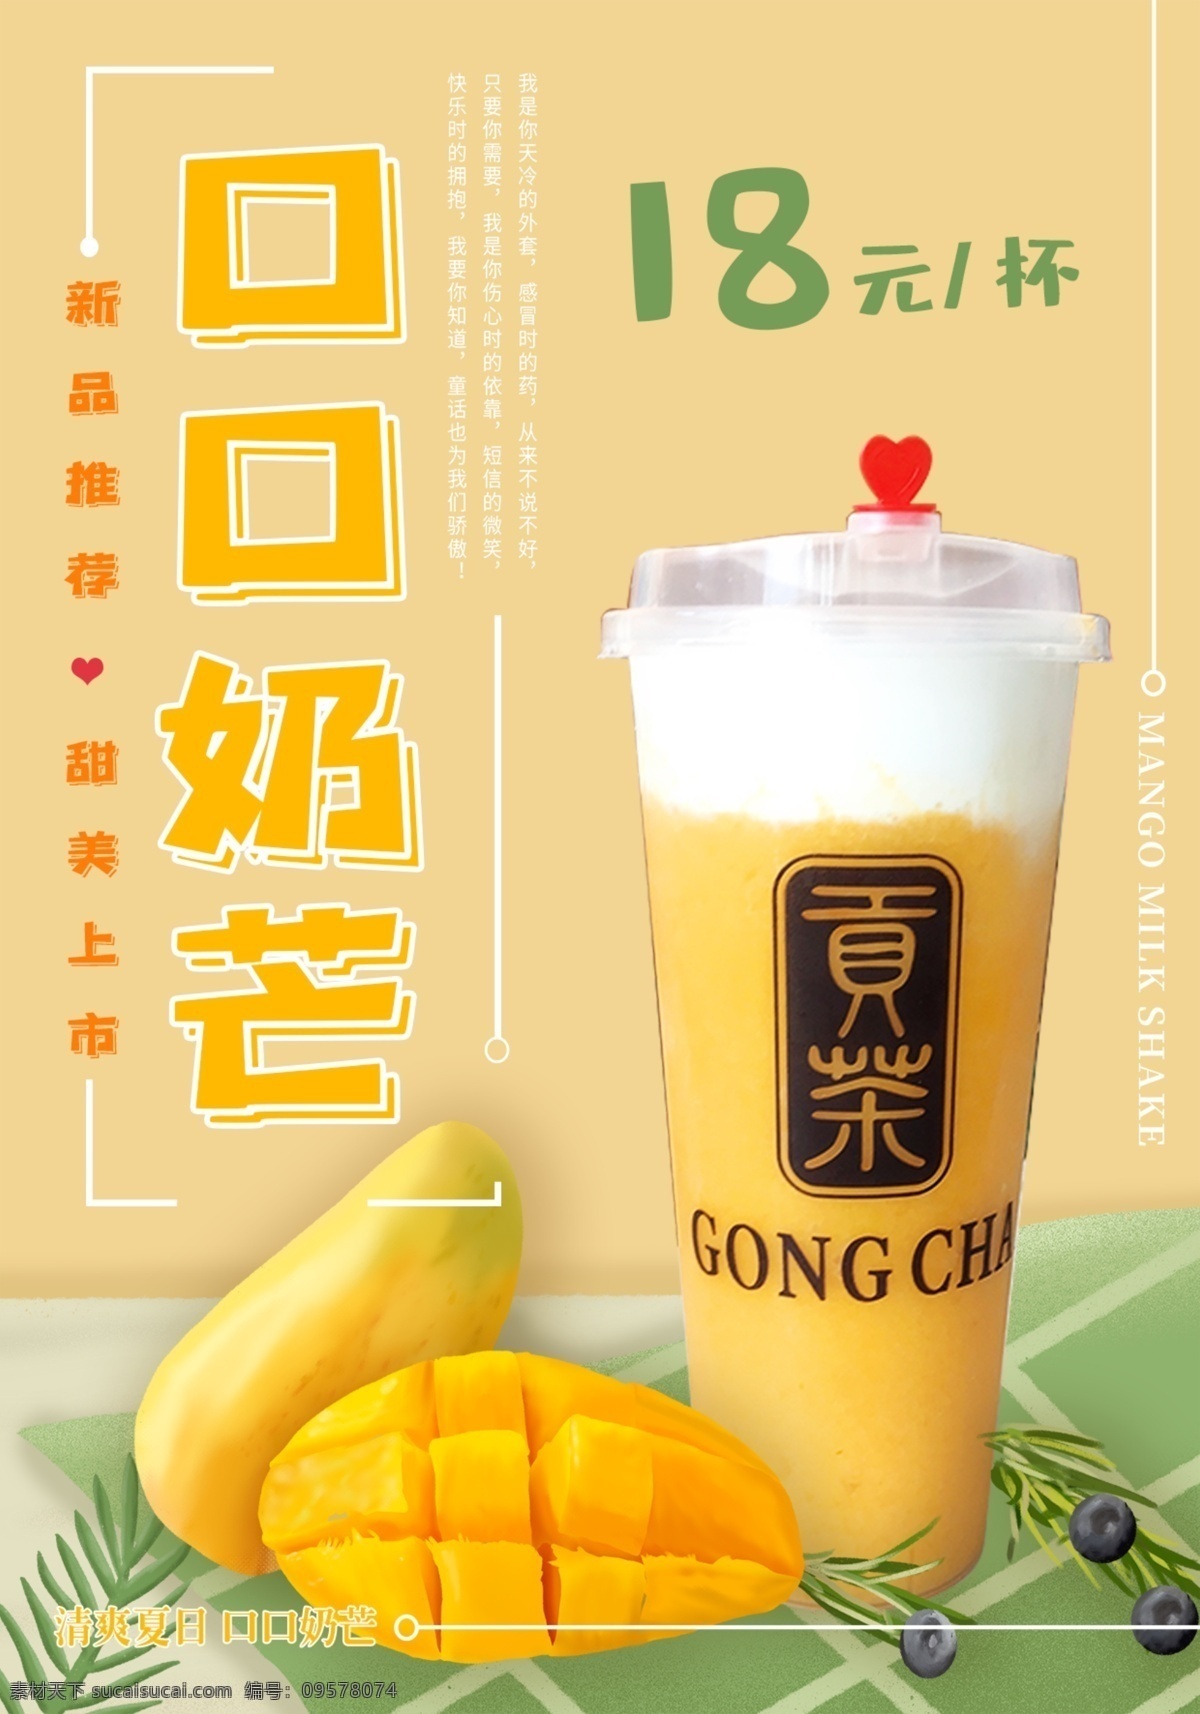 芒果饮料 芒果 饮料 奶芒 饮品 海报 广告